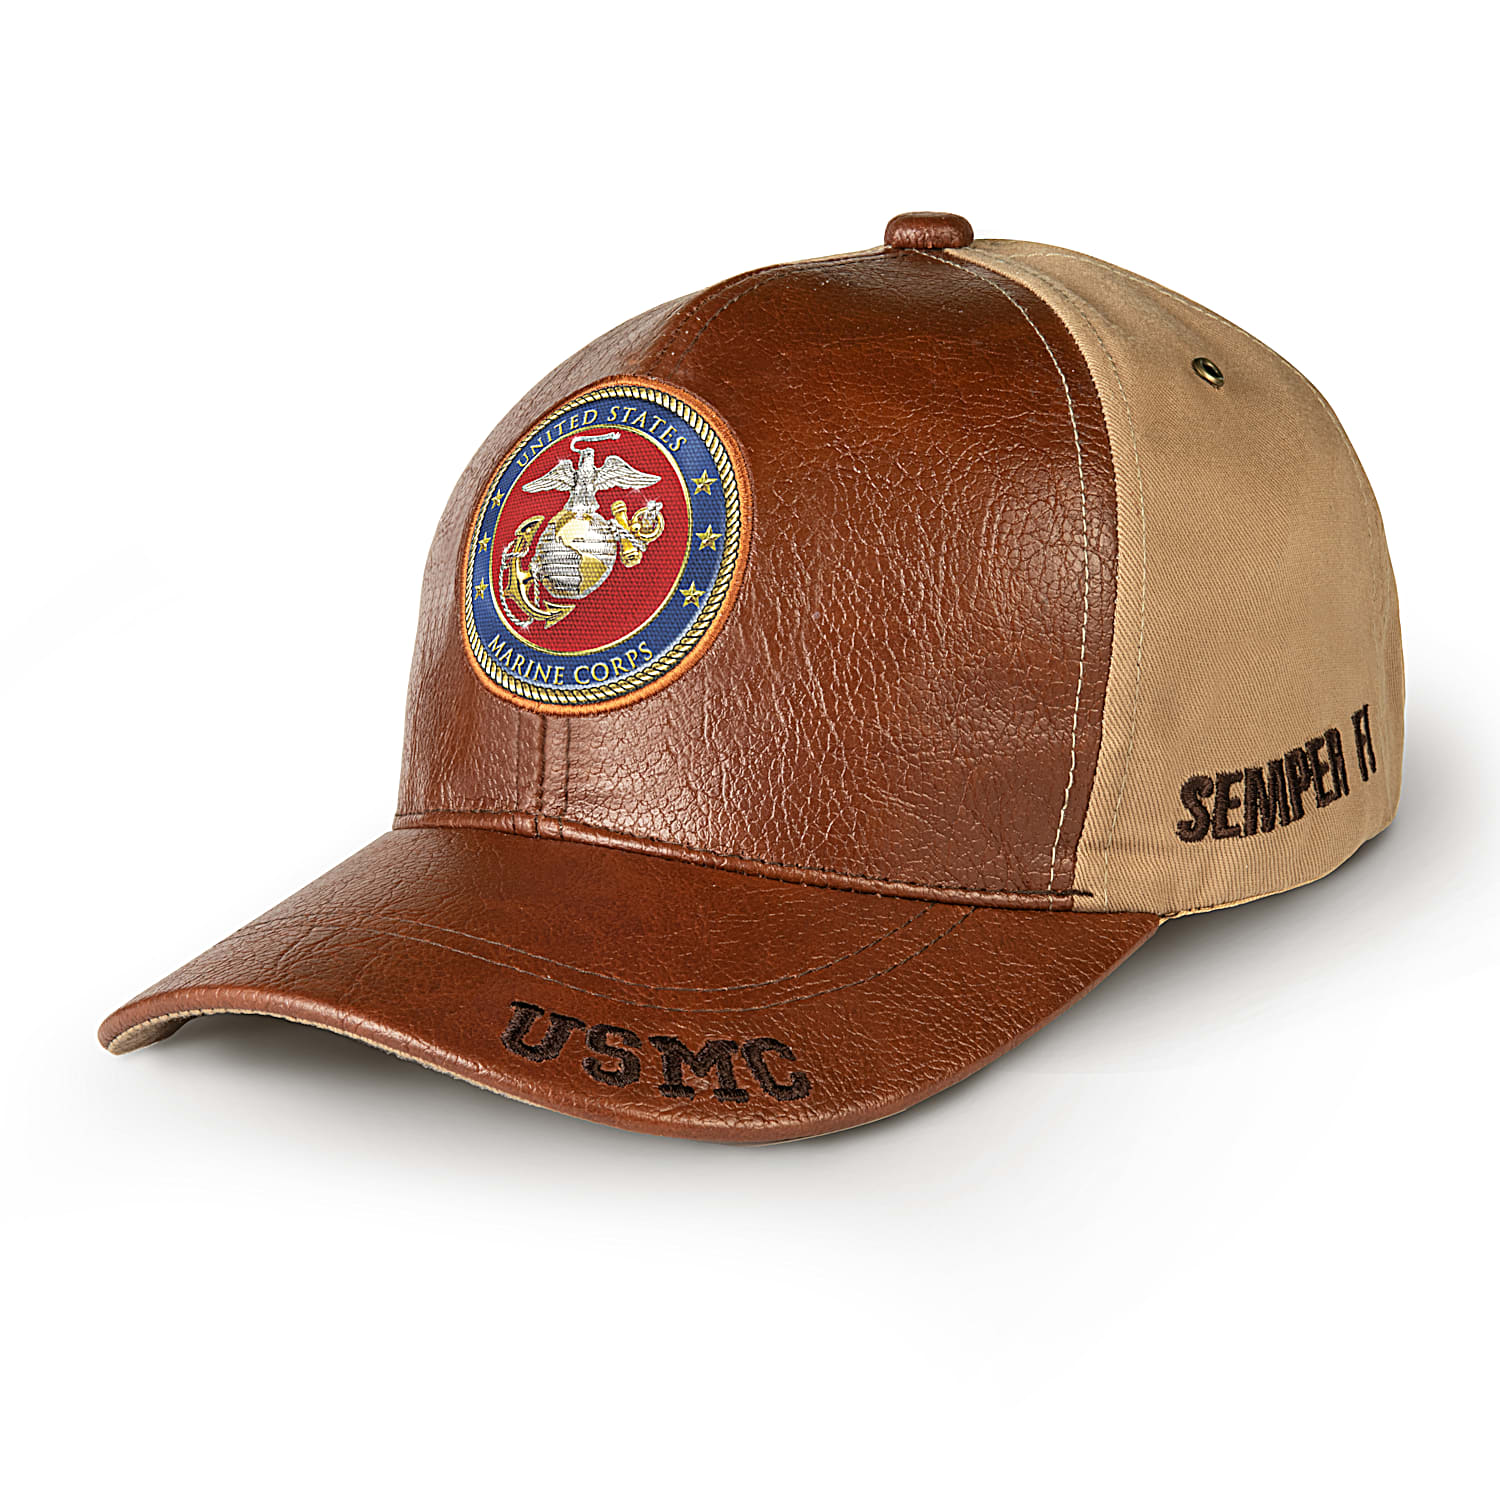 U.S. Marines Strong Men's Hat